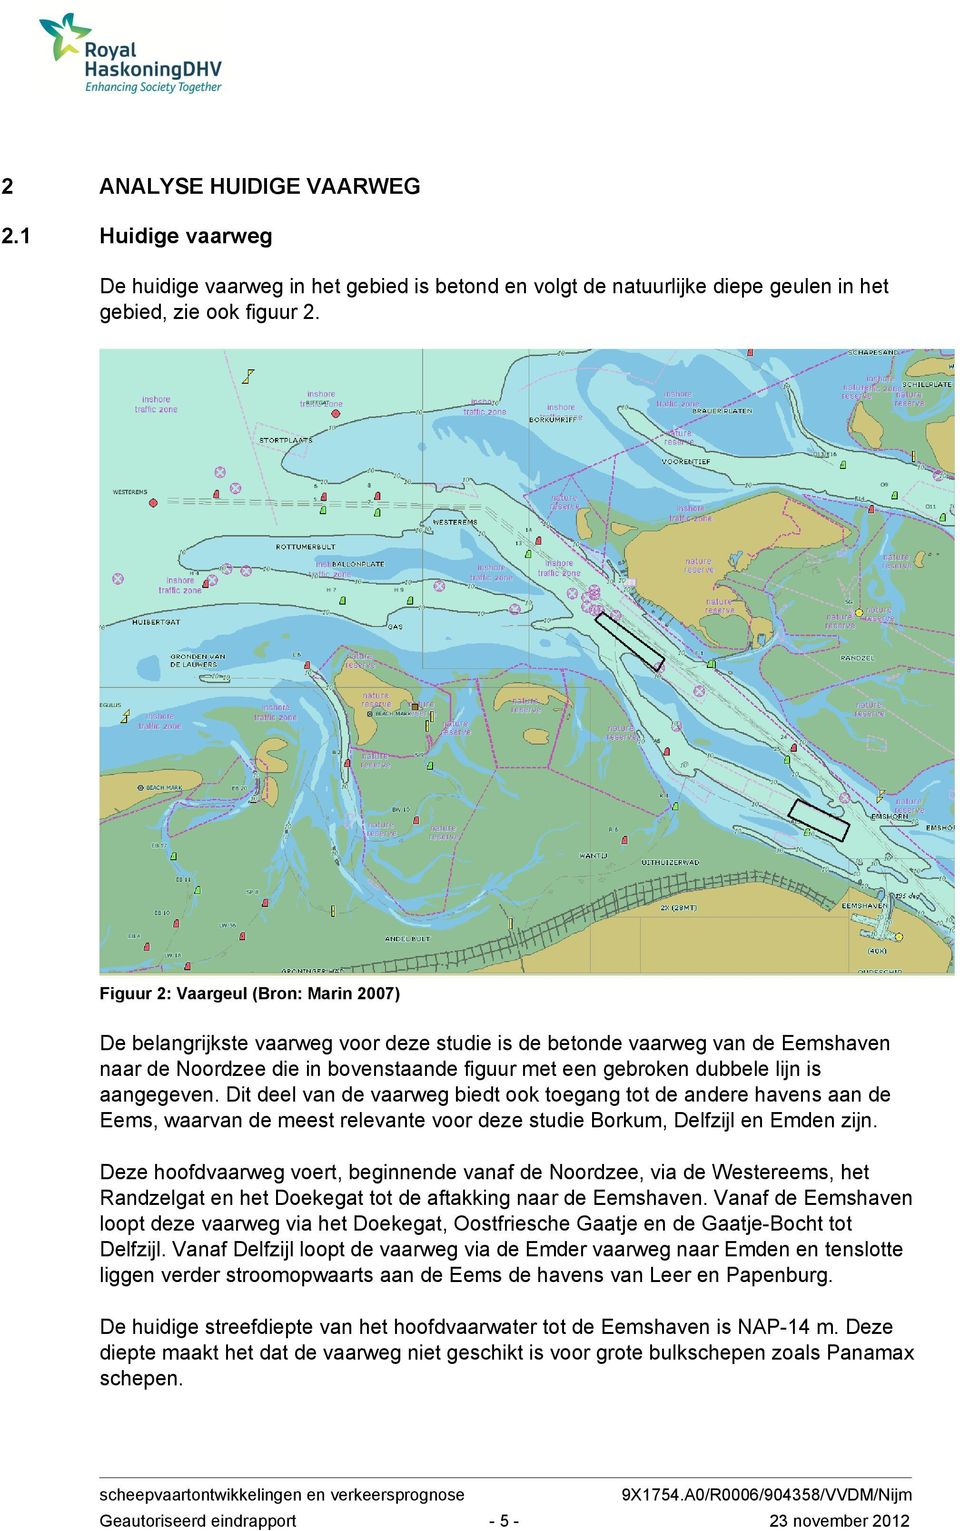 aangegeven. Dit deel van de vaarweg biedt ook toegang tot de andere havens aan de Eems, waarvan de meest relevante voor deze studie Borkum, Delfzijl en Emden zijn.